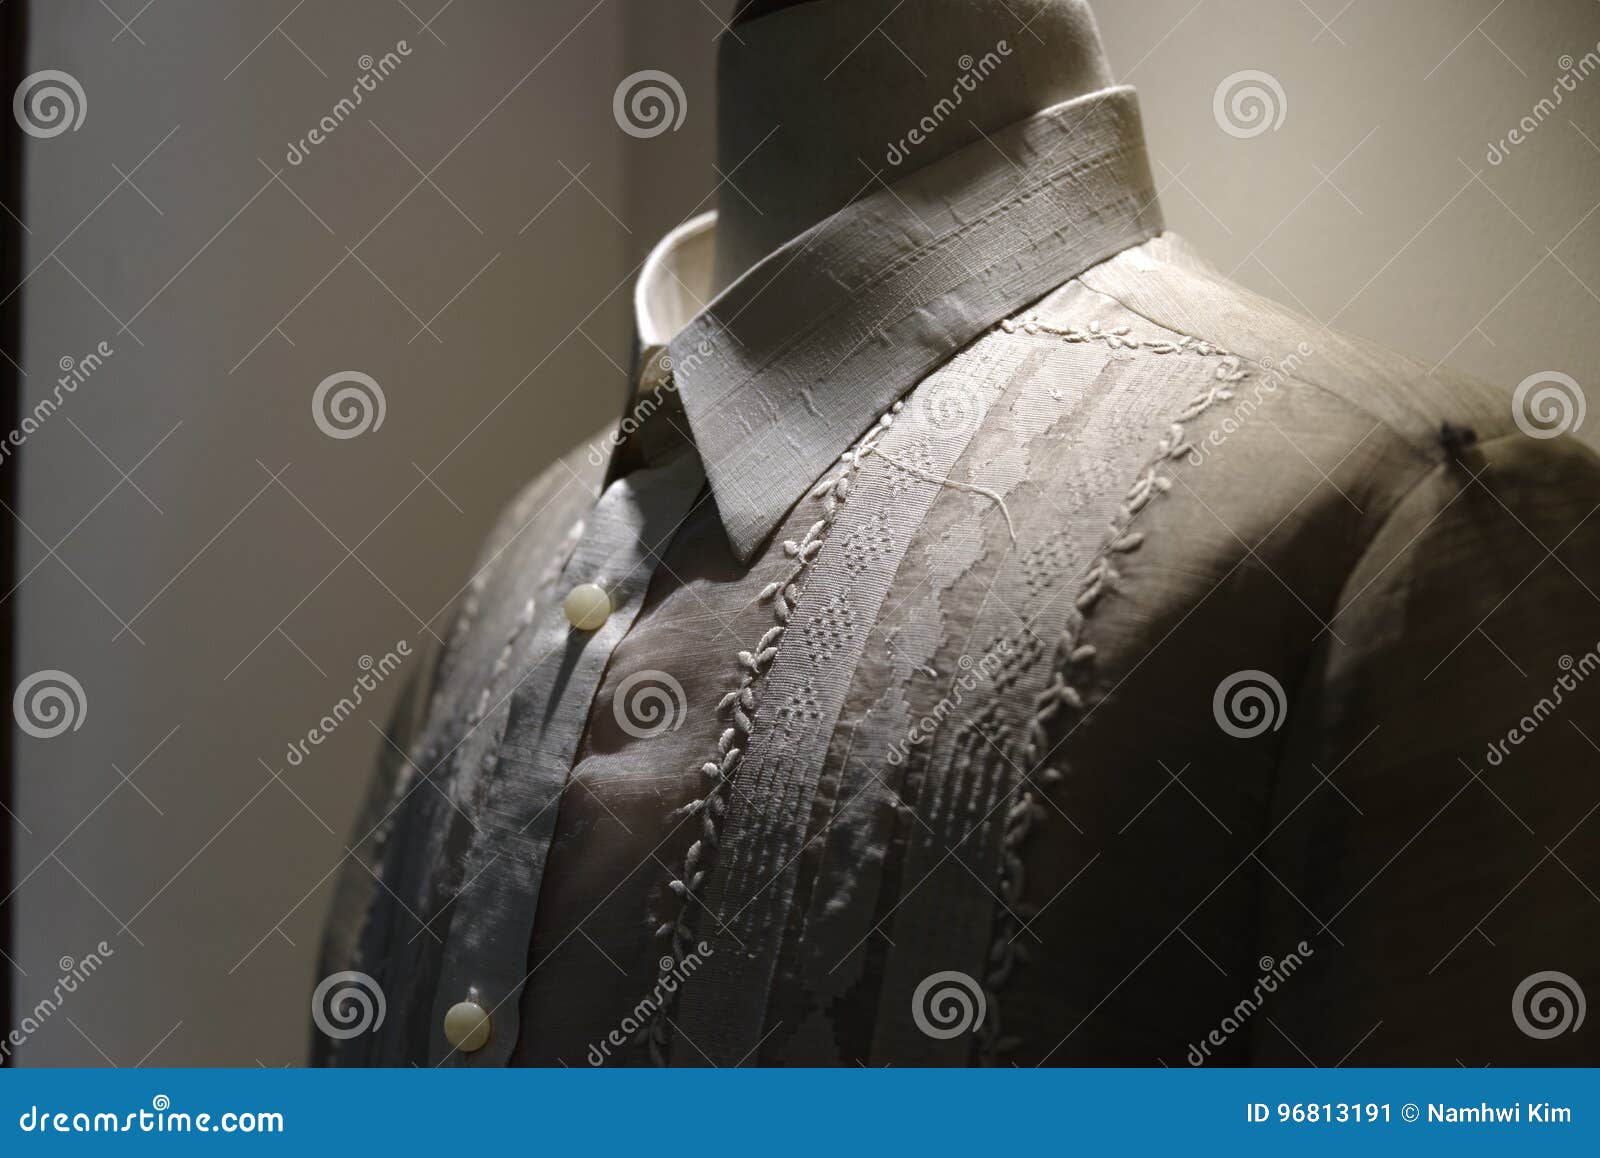 formal shirt and national dress barong tagalog